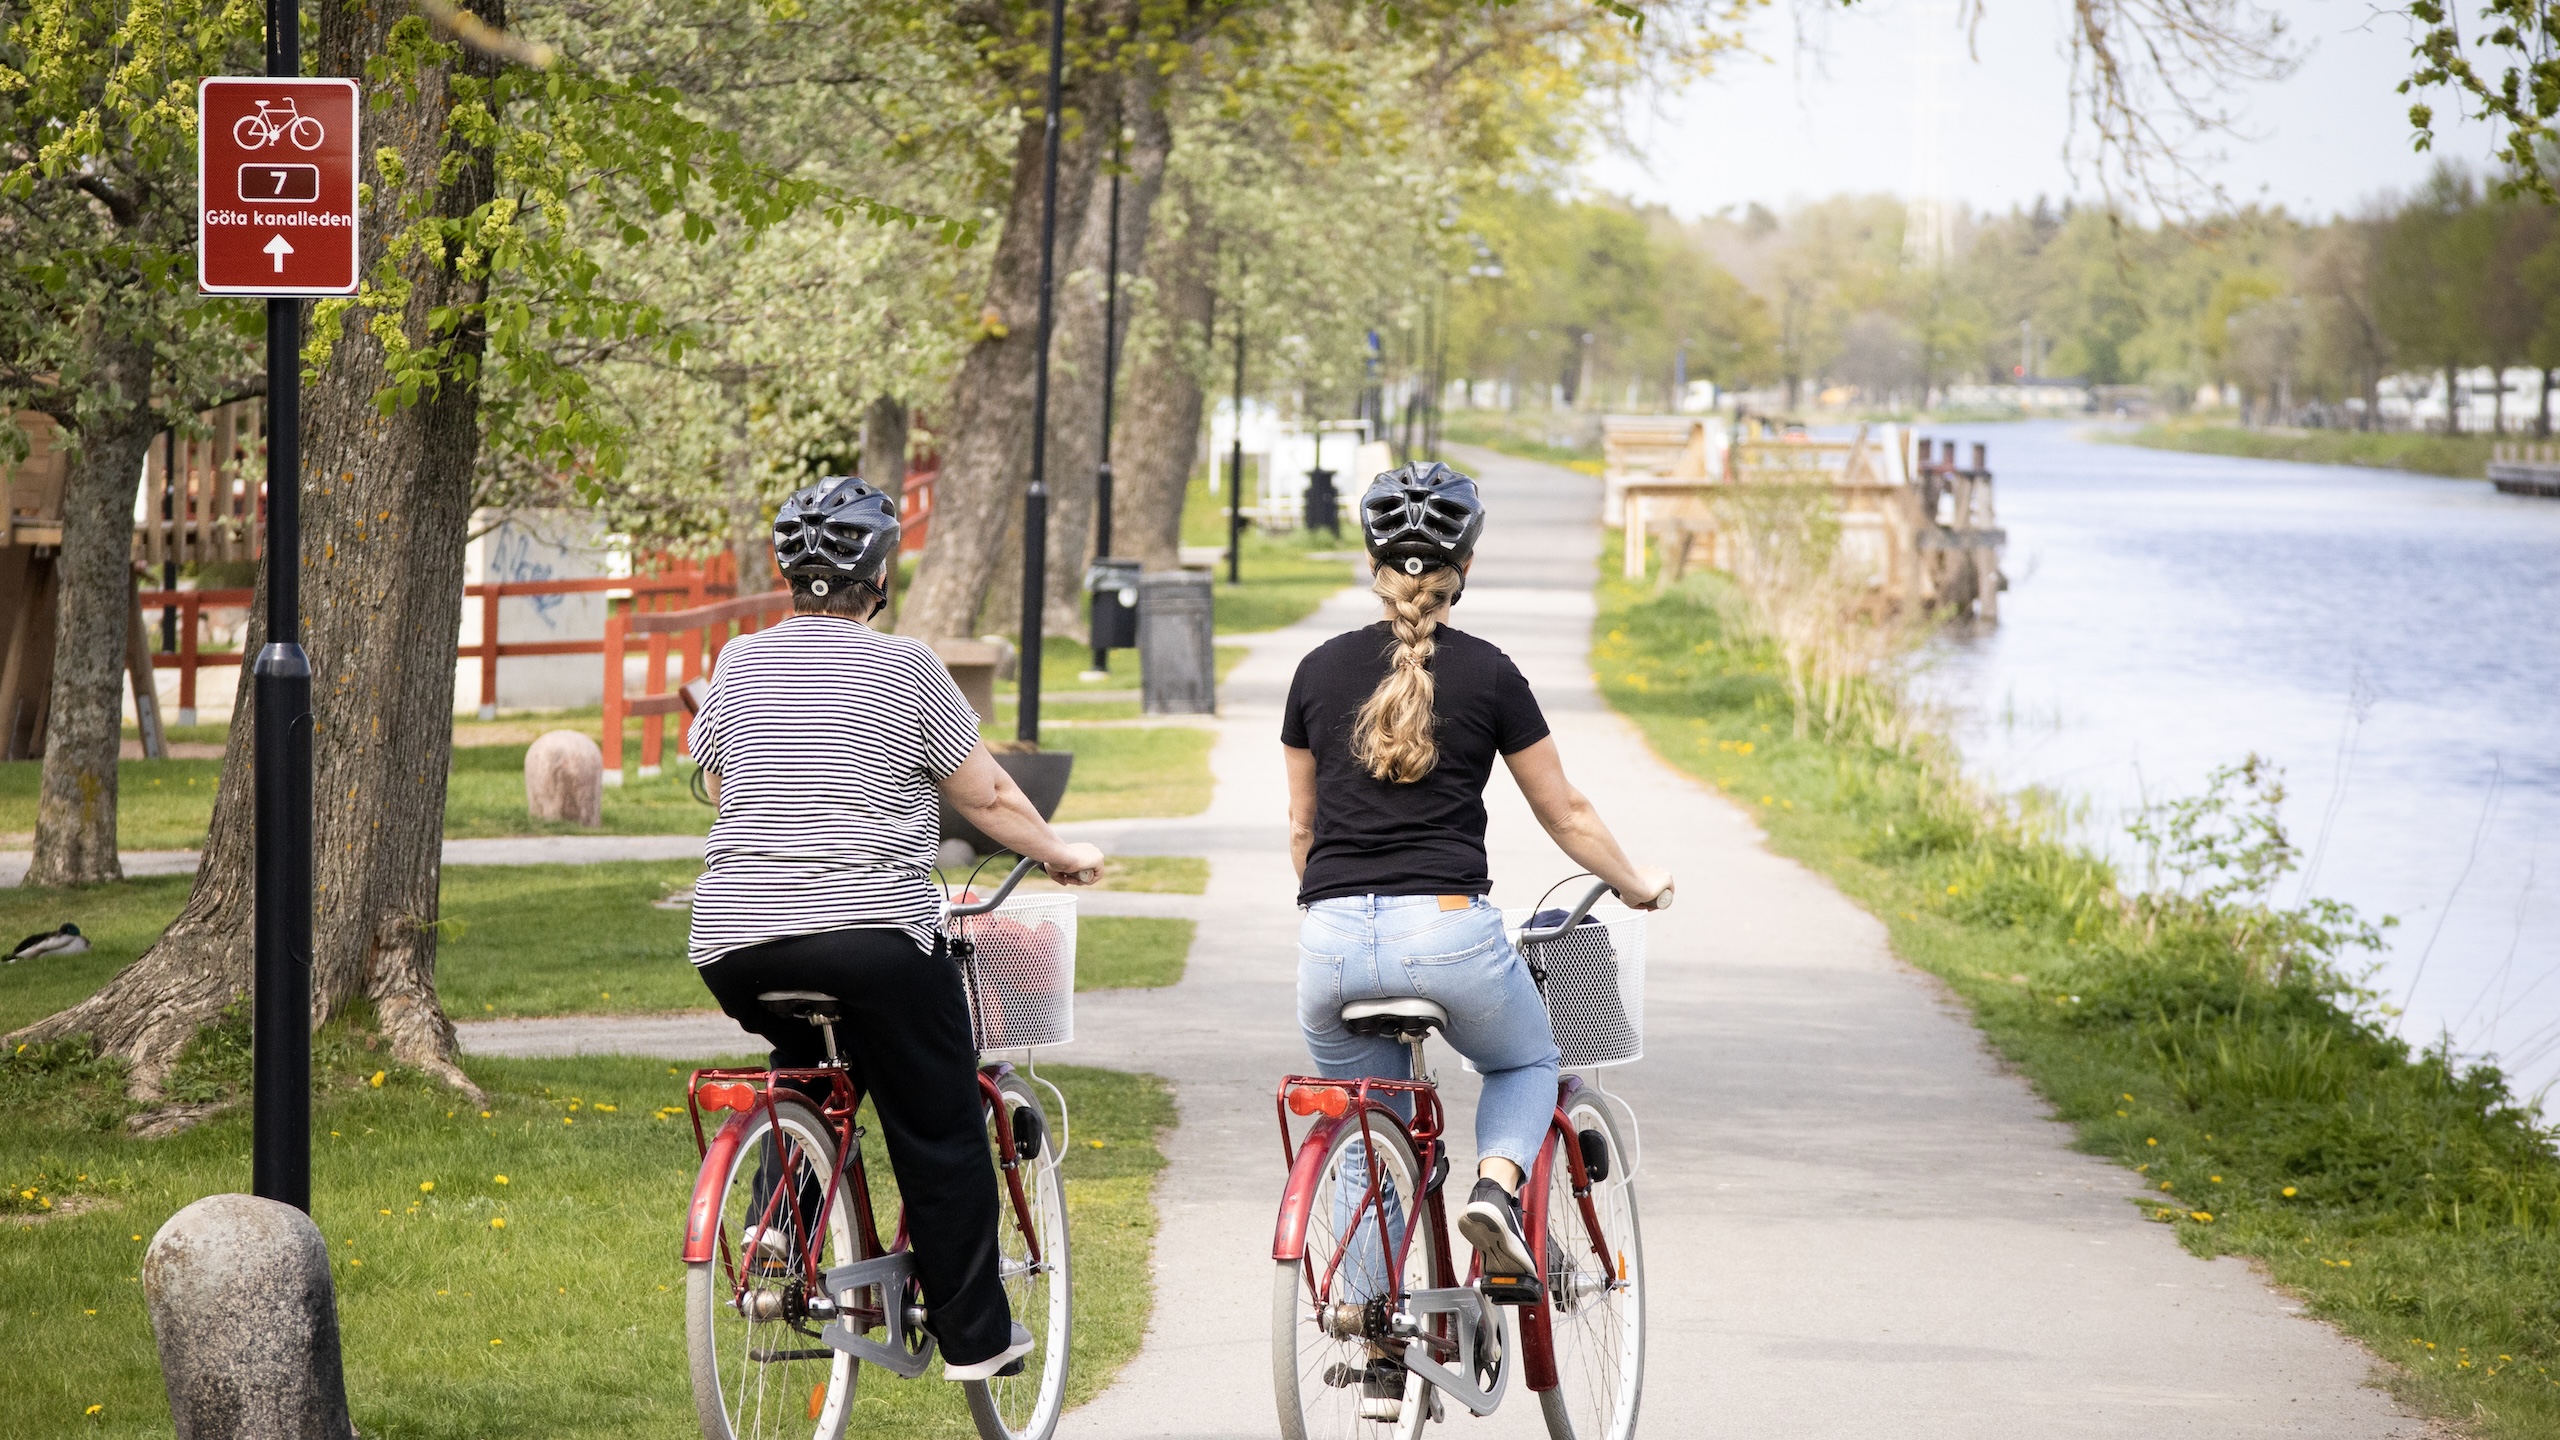 Två kvinnor cyklar på Göta kanalleden